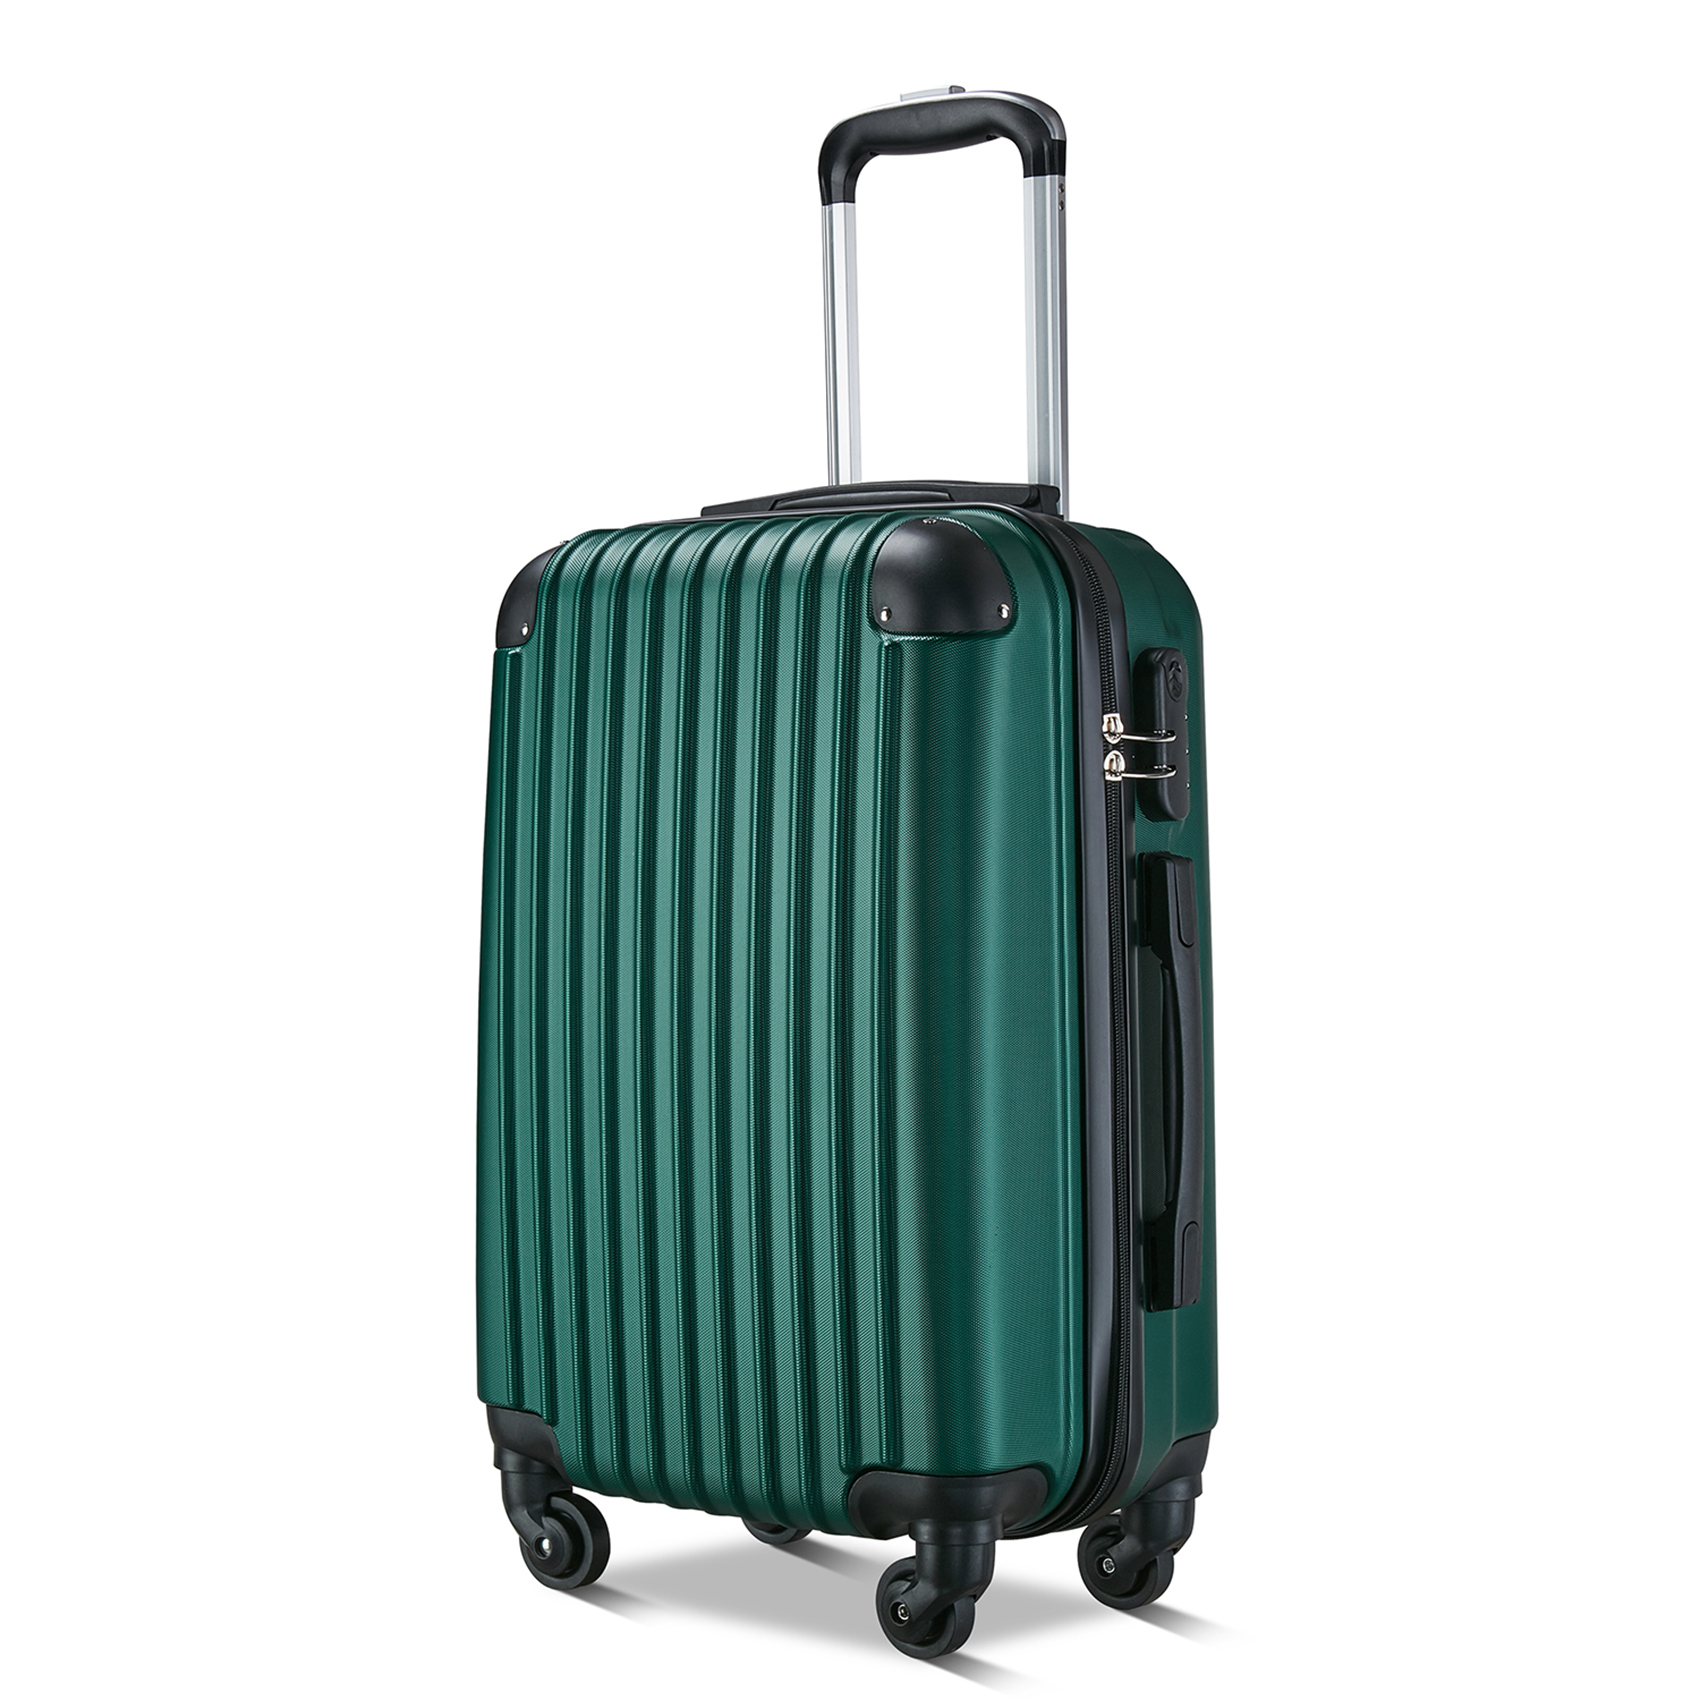 キャリーケース スーツケース mサイズ 3泊4日 キャリーバッグ 超軽量 旅行カバン バック かわいい 静音 研修 海外 国内 出張